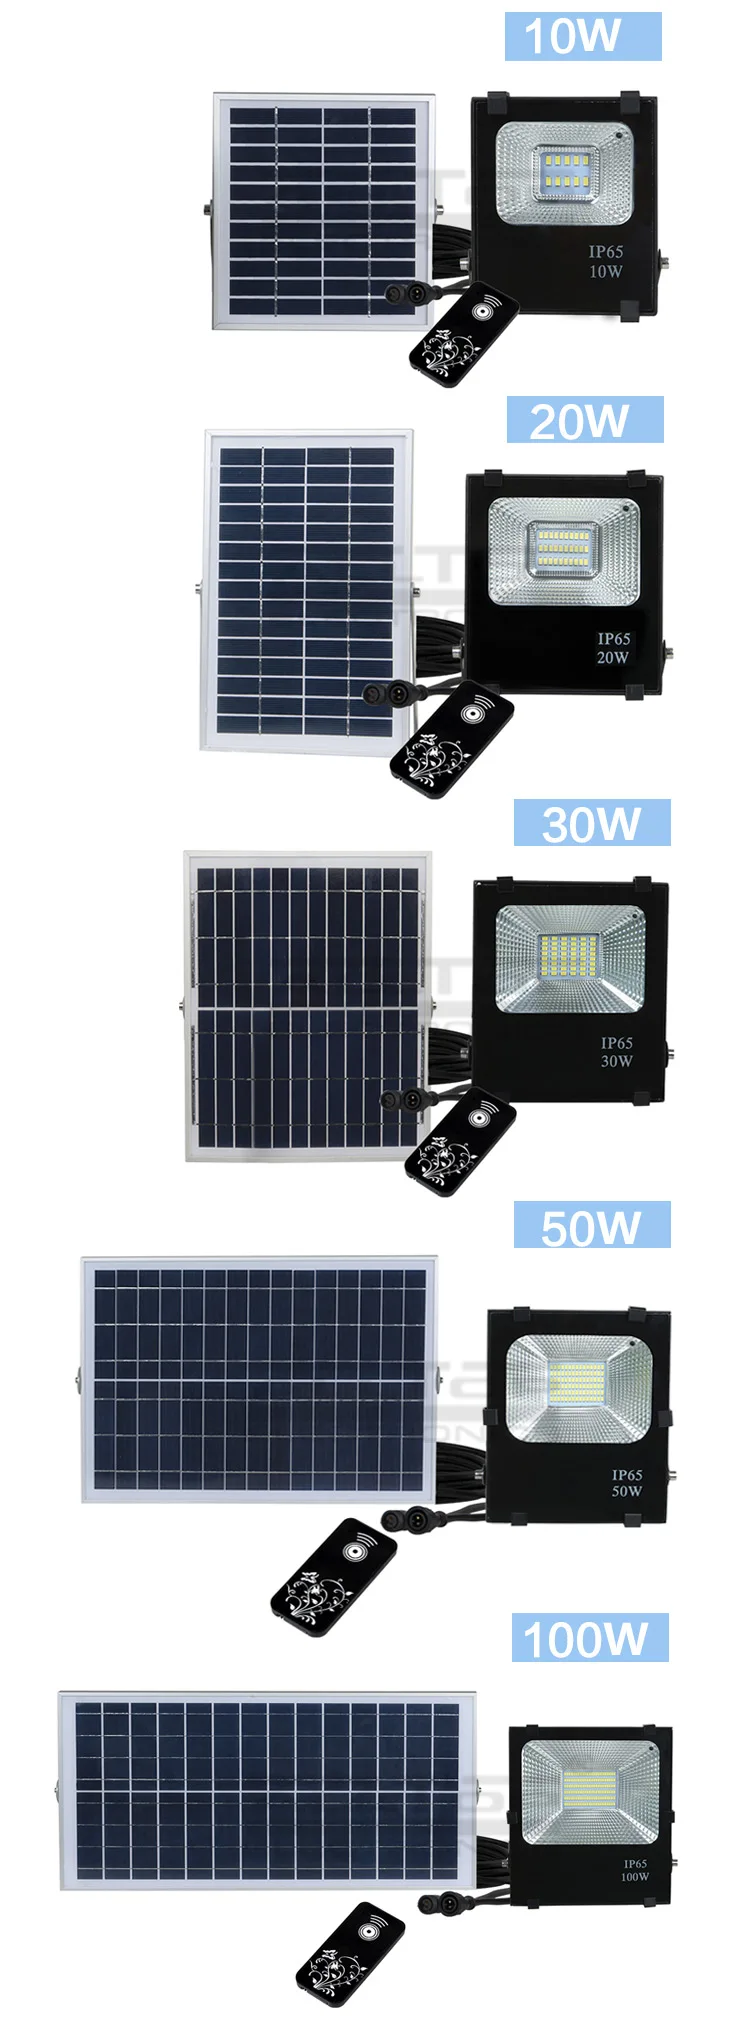 High power ip65 outdoor 10w 20w 30w 50w 100w waterproof battery billboard solar led flood light price